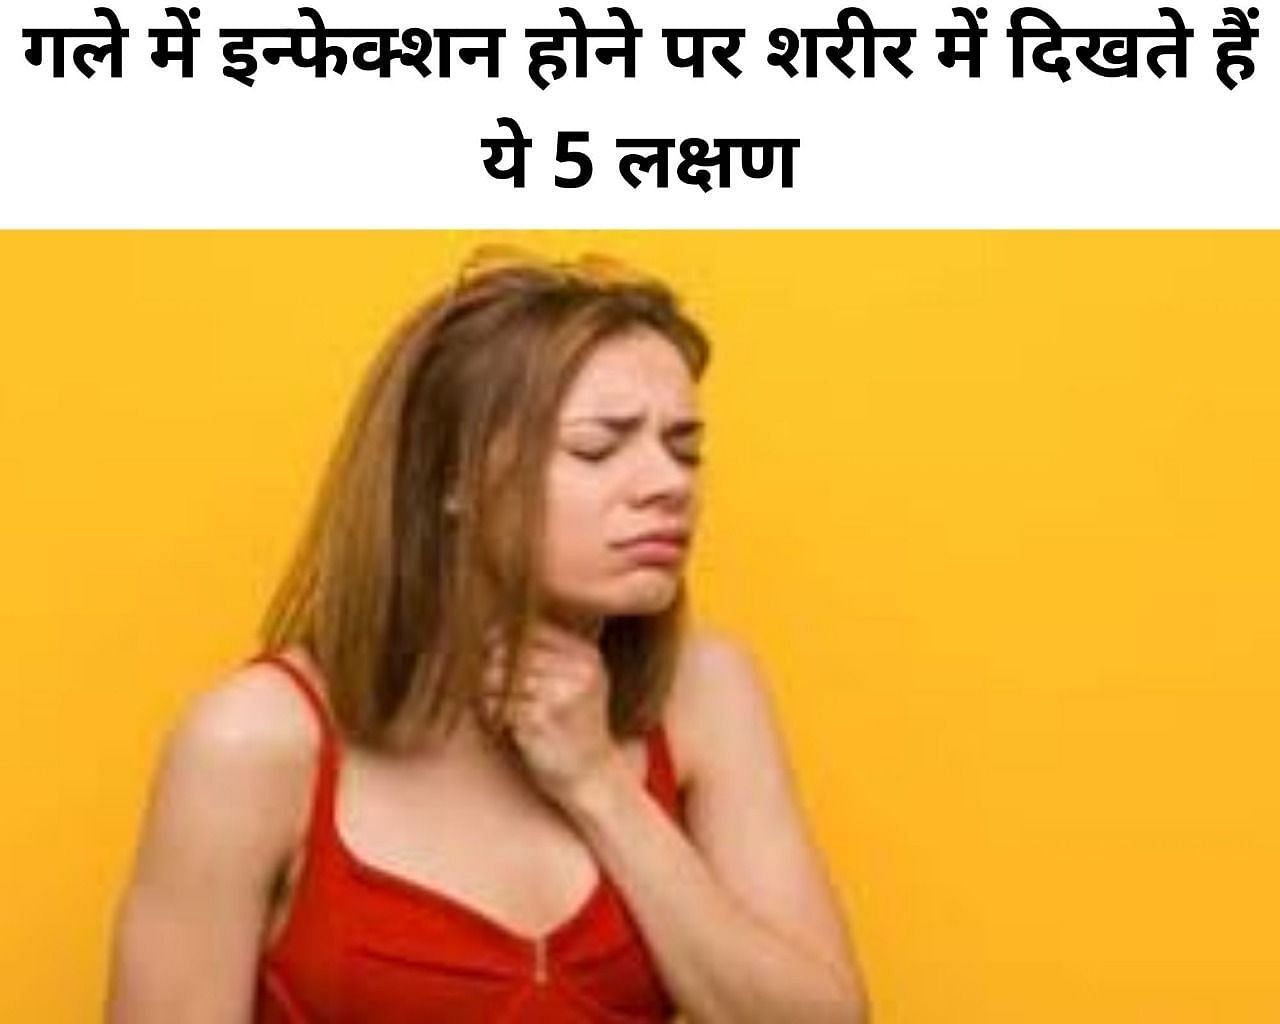 गले में इन्फेक्शन होने पर शरीर में दिखते हैं ये 5 लक्षण (फोटो - sportskeeda hindi)